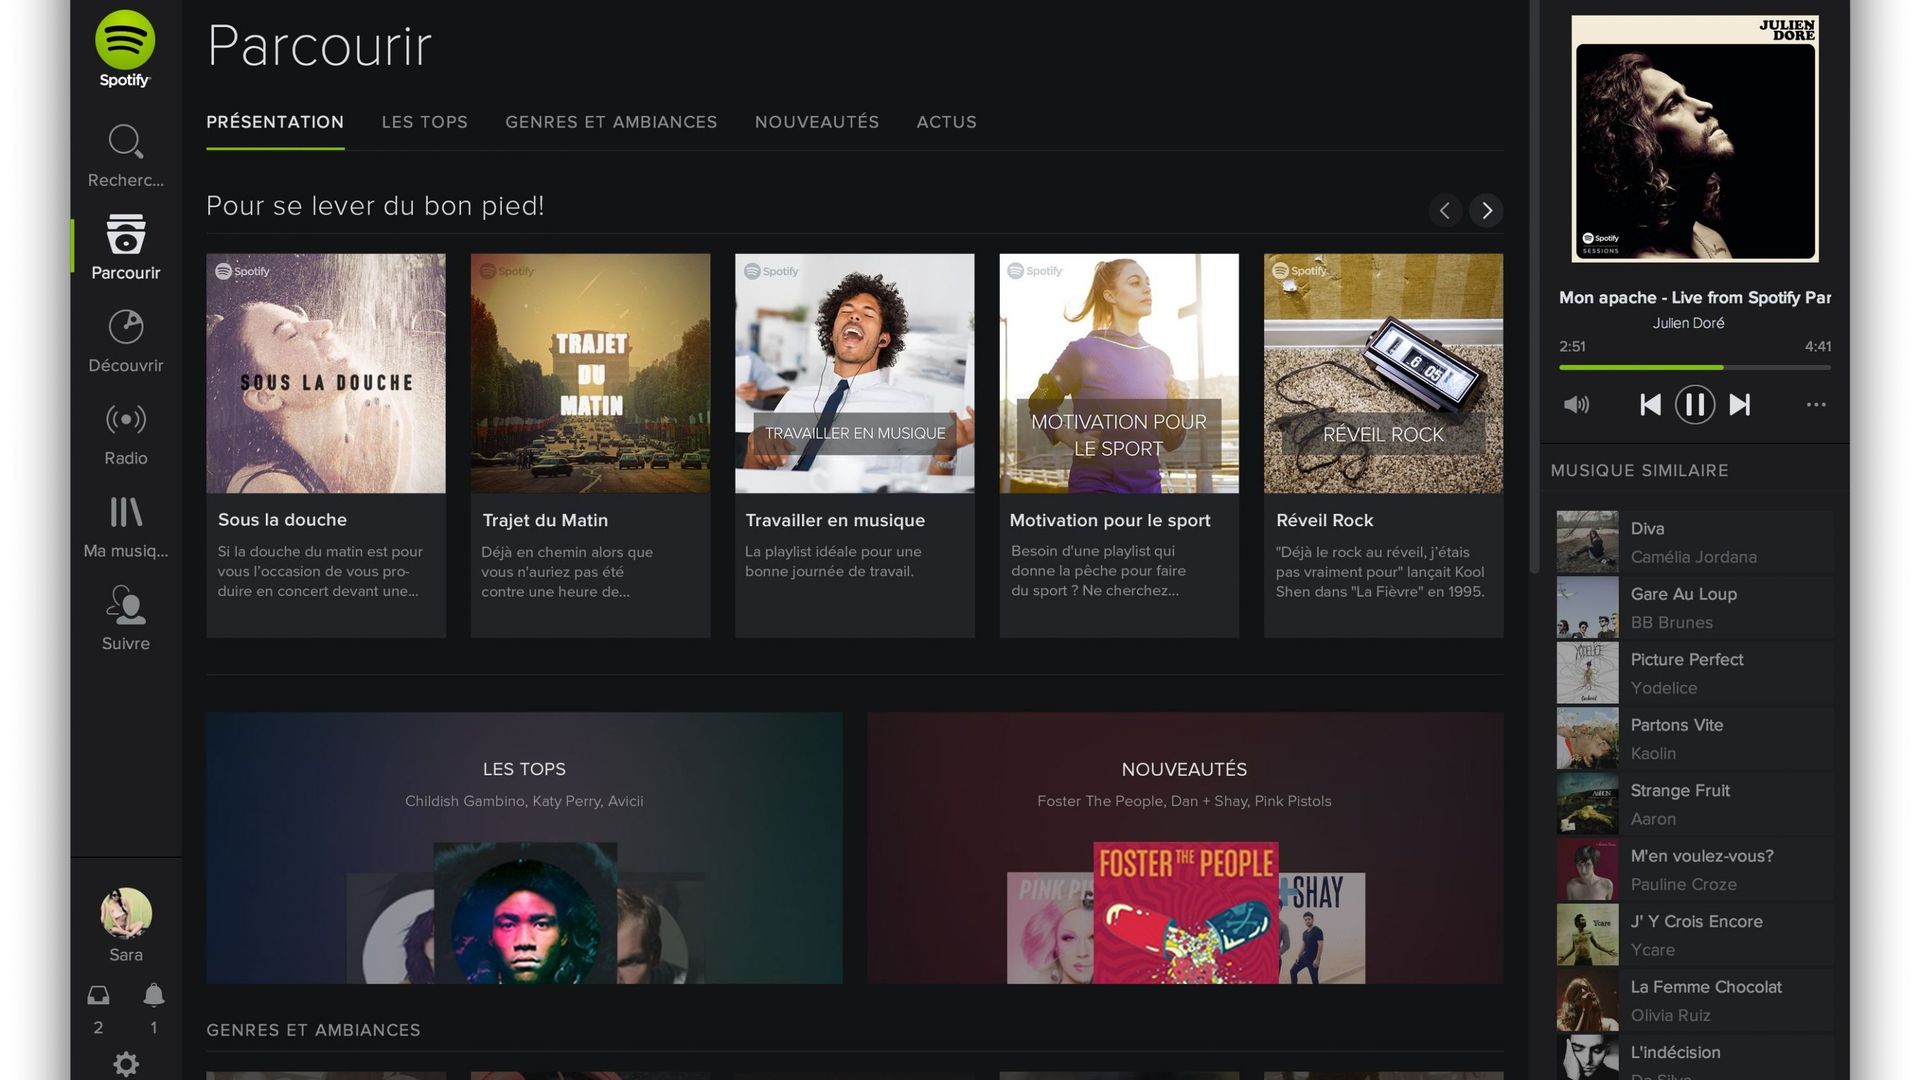 Spotify adopte un nouveau look, plus sombre